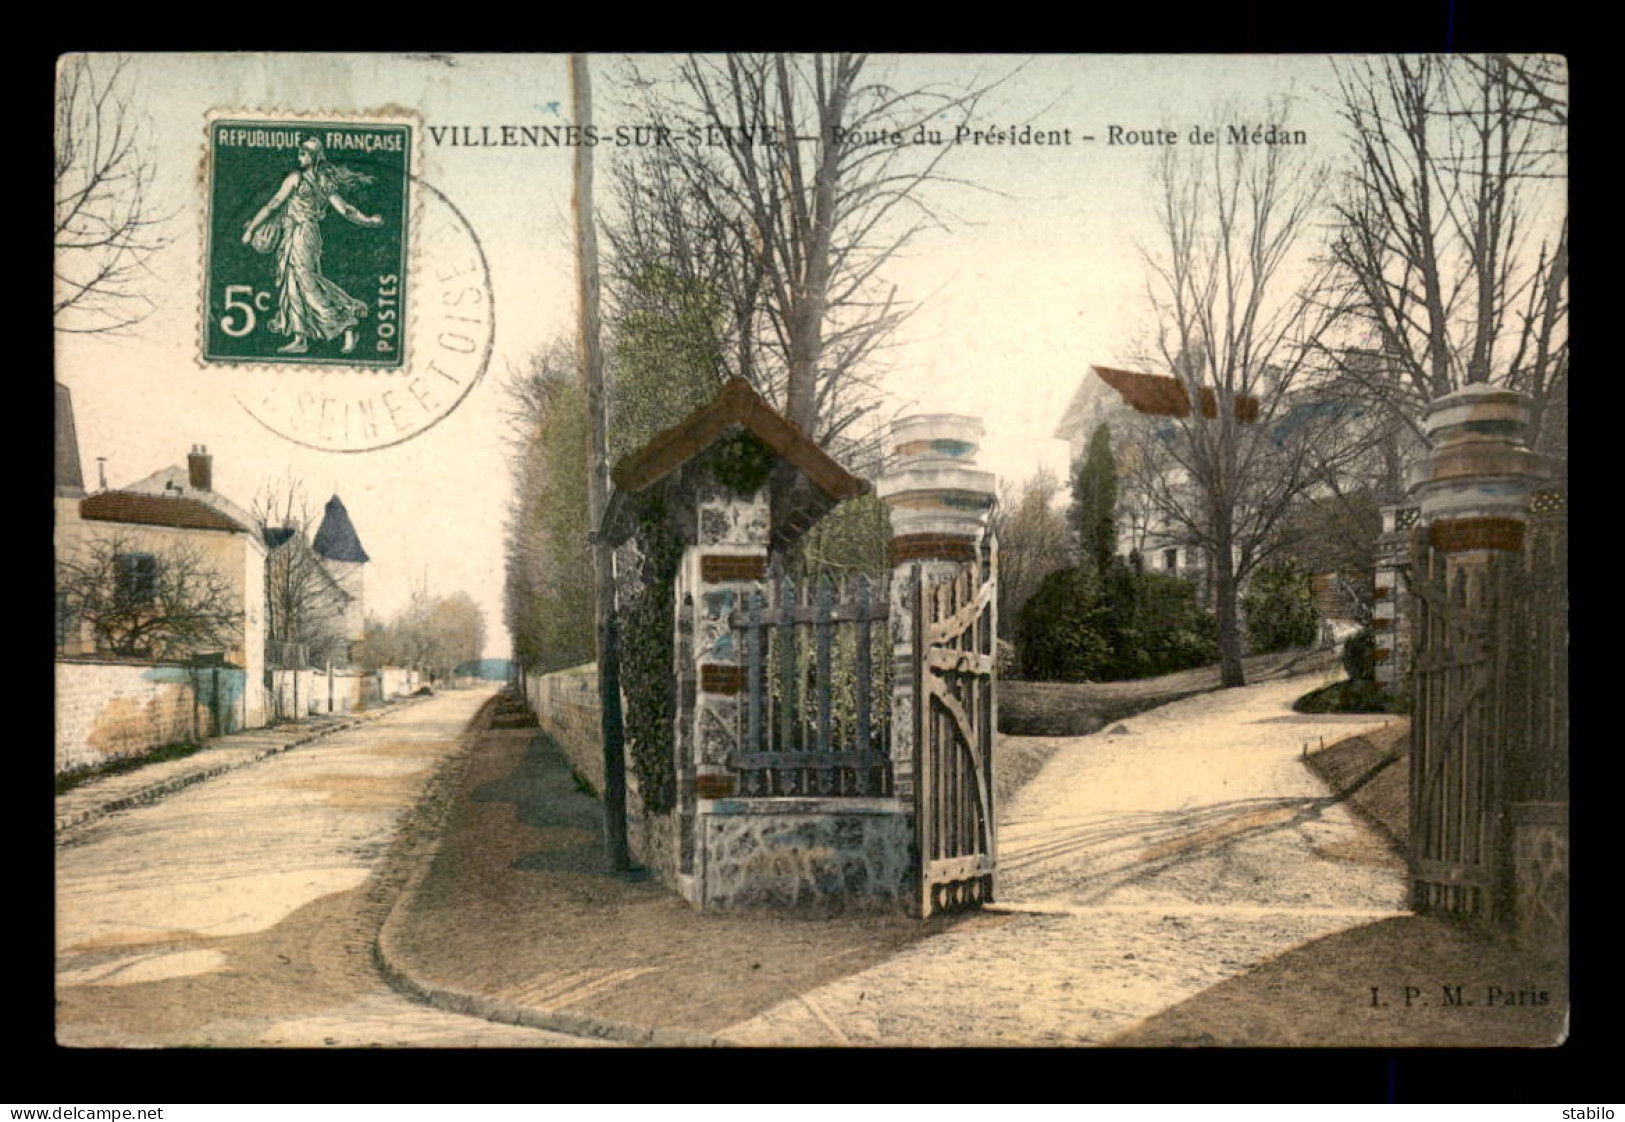 78 - VILENNES-SUR-SEINE - ROUTE DU PRESIDENT - ROUTE DE MEDAN - CARTE COLORISEE - Villennes-sur-Seine